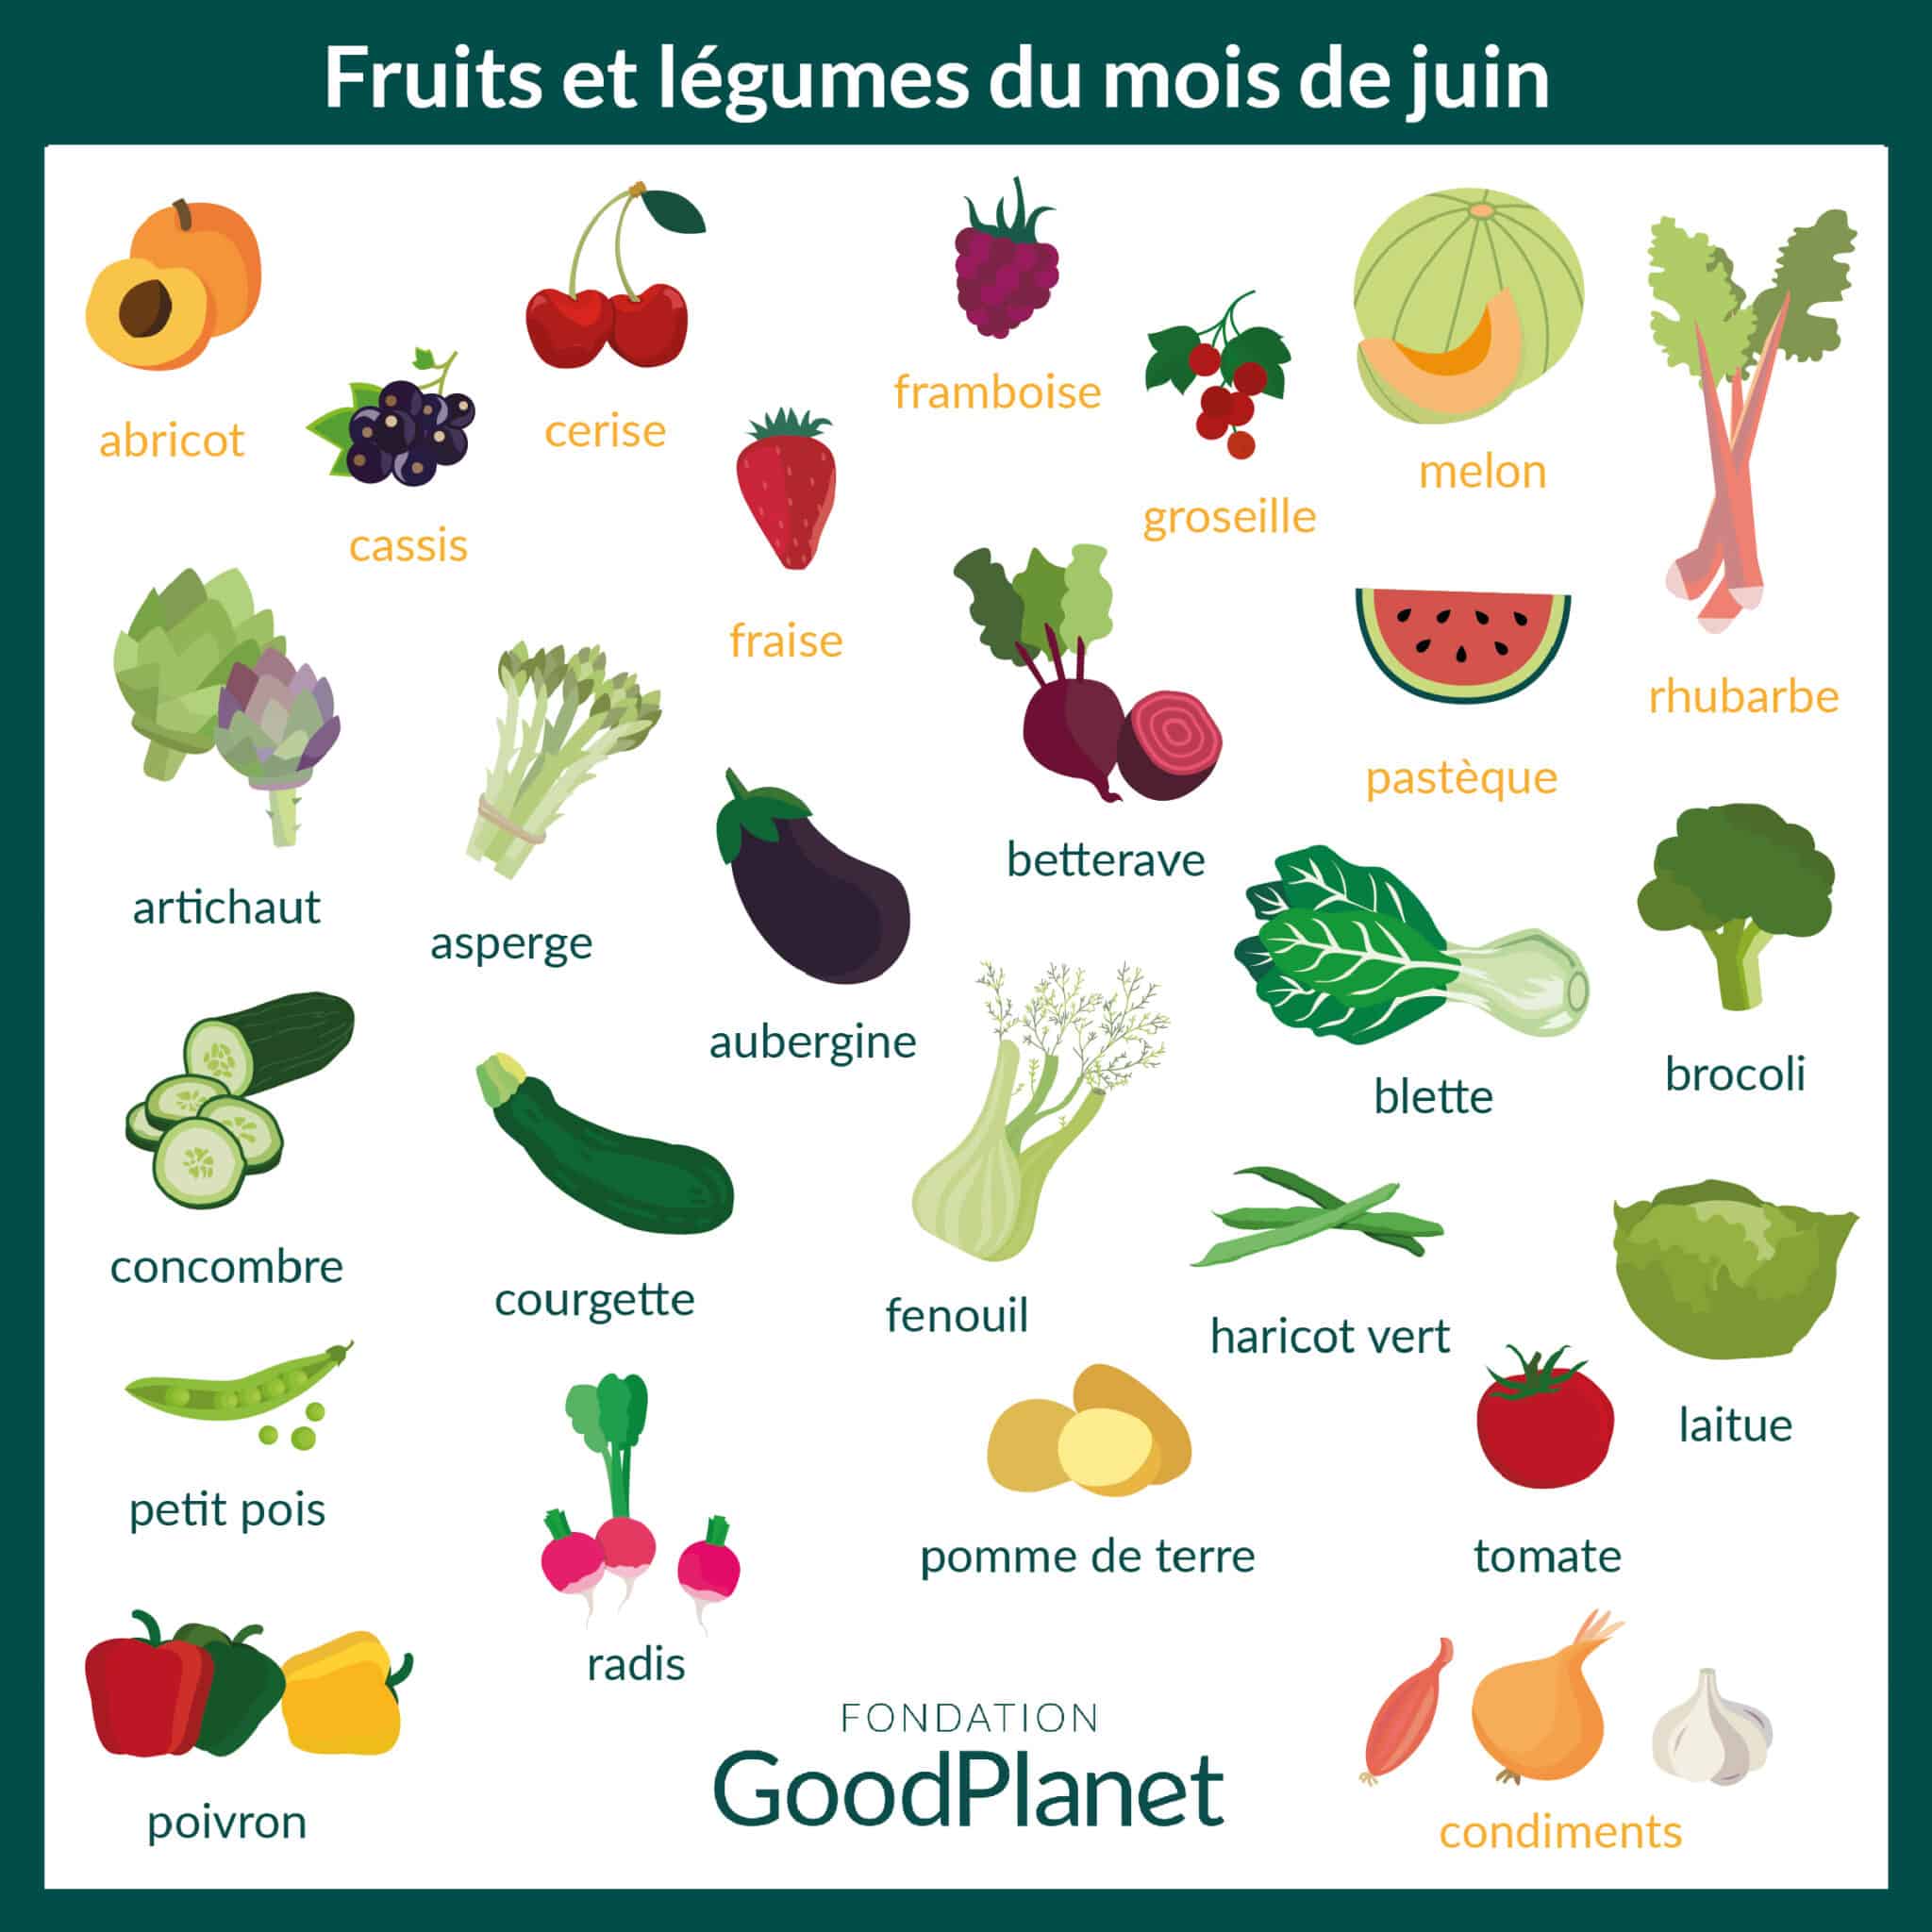 Les Fruits et Légumes Frais - Avis aux gourmands, les fruits et légumes du  mois de juin sont arrivés !☀️ Découvrez les stars du mois prêts à ravir nos  papilles ! 😋